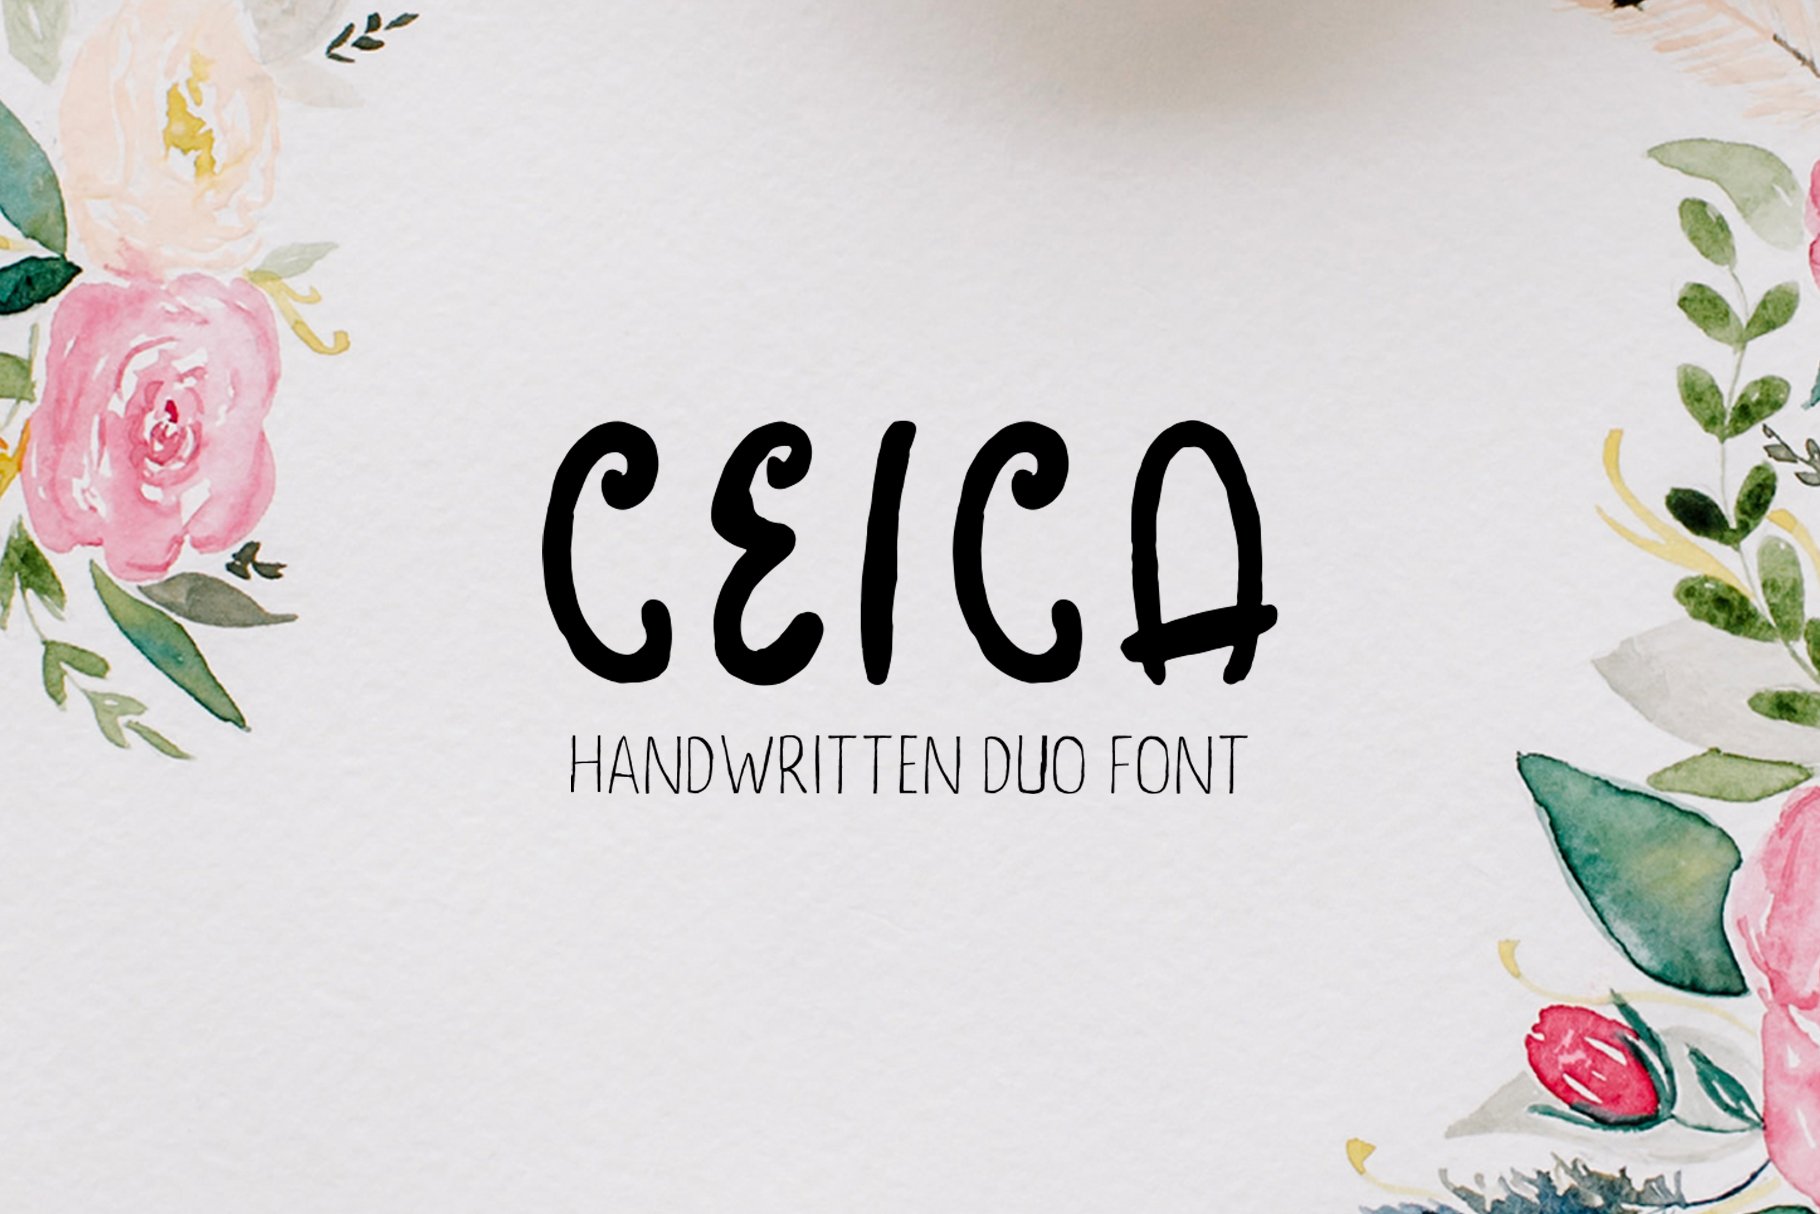 45手写花卉字体 Ceica Handwritten Duo